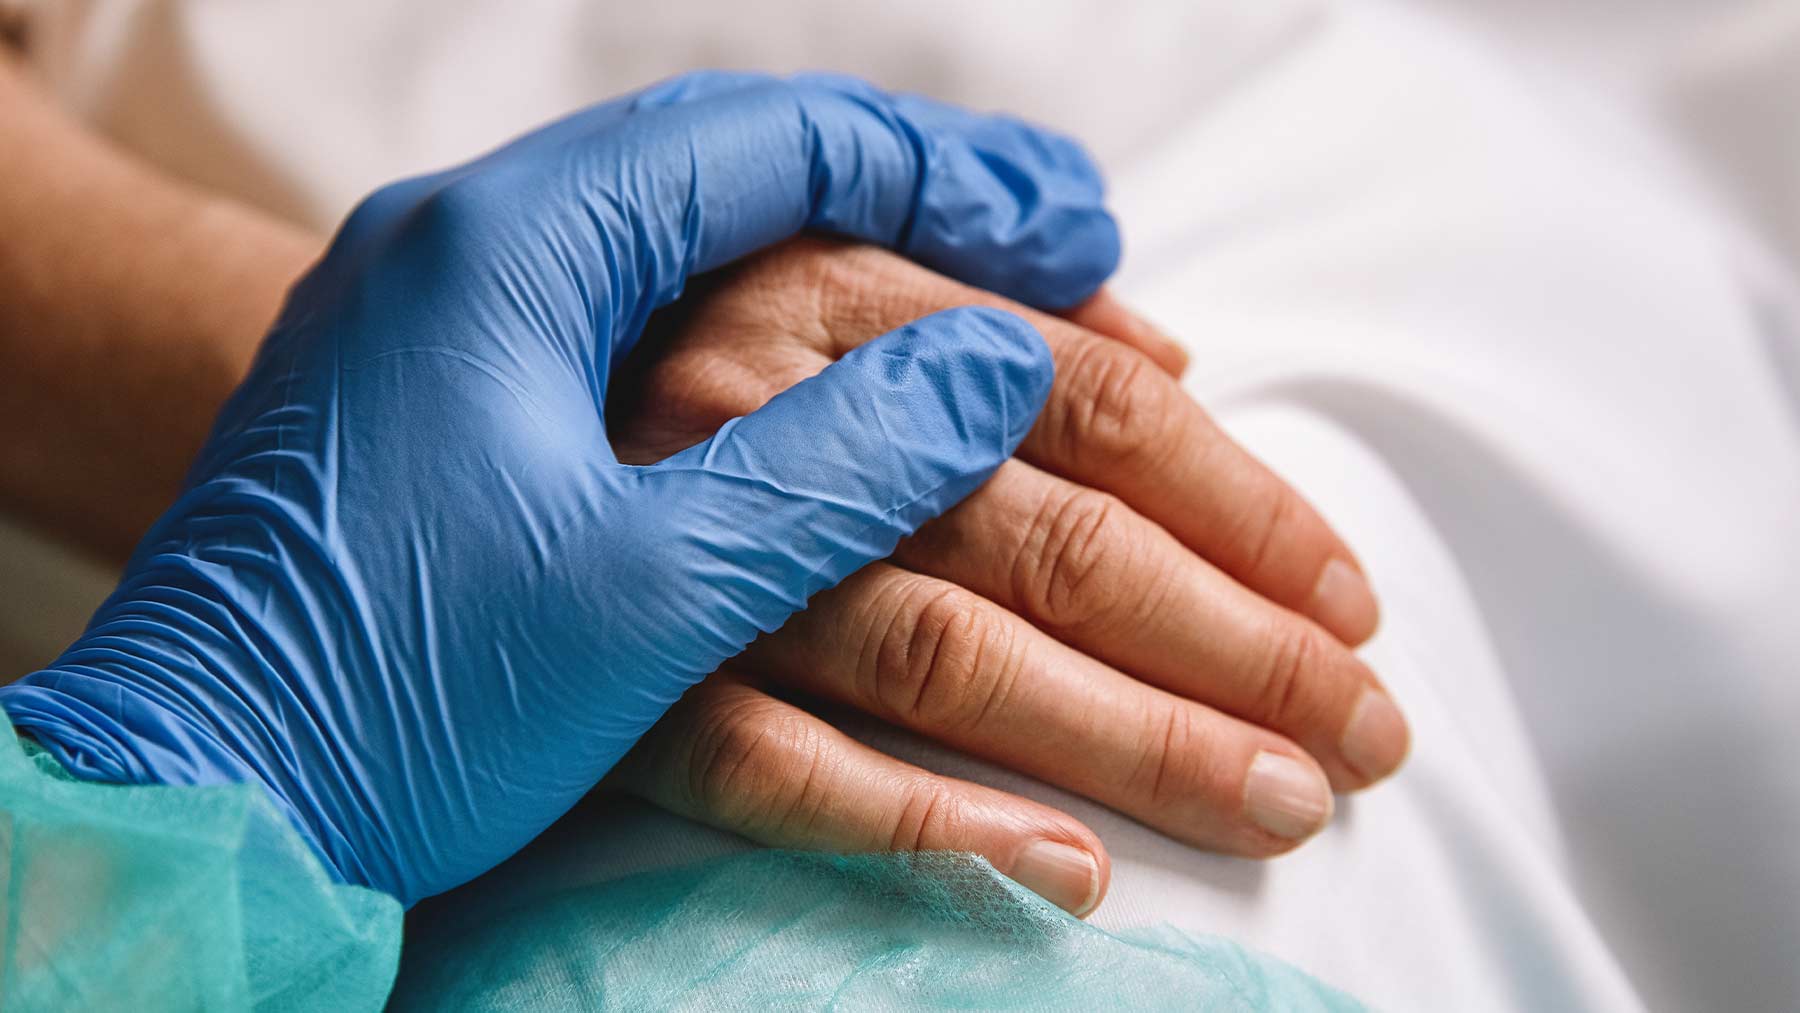 En bild på två händer. En läkare har lagt sin hand över en patients hand, i en tröstande gest.